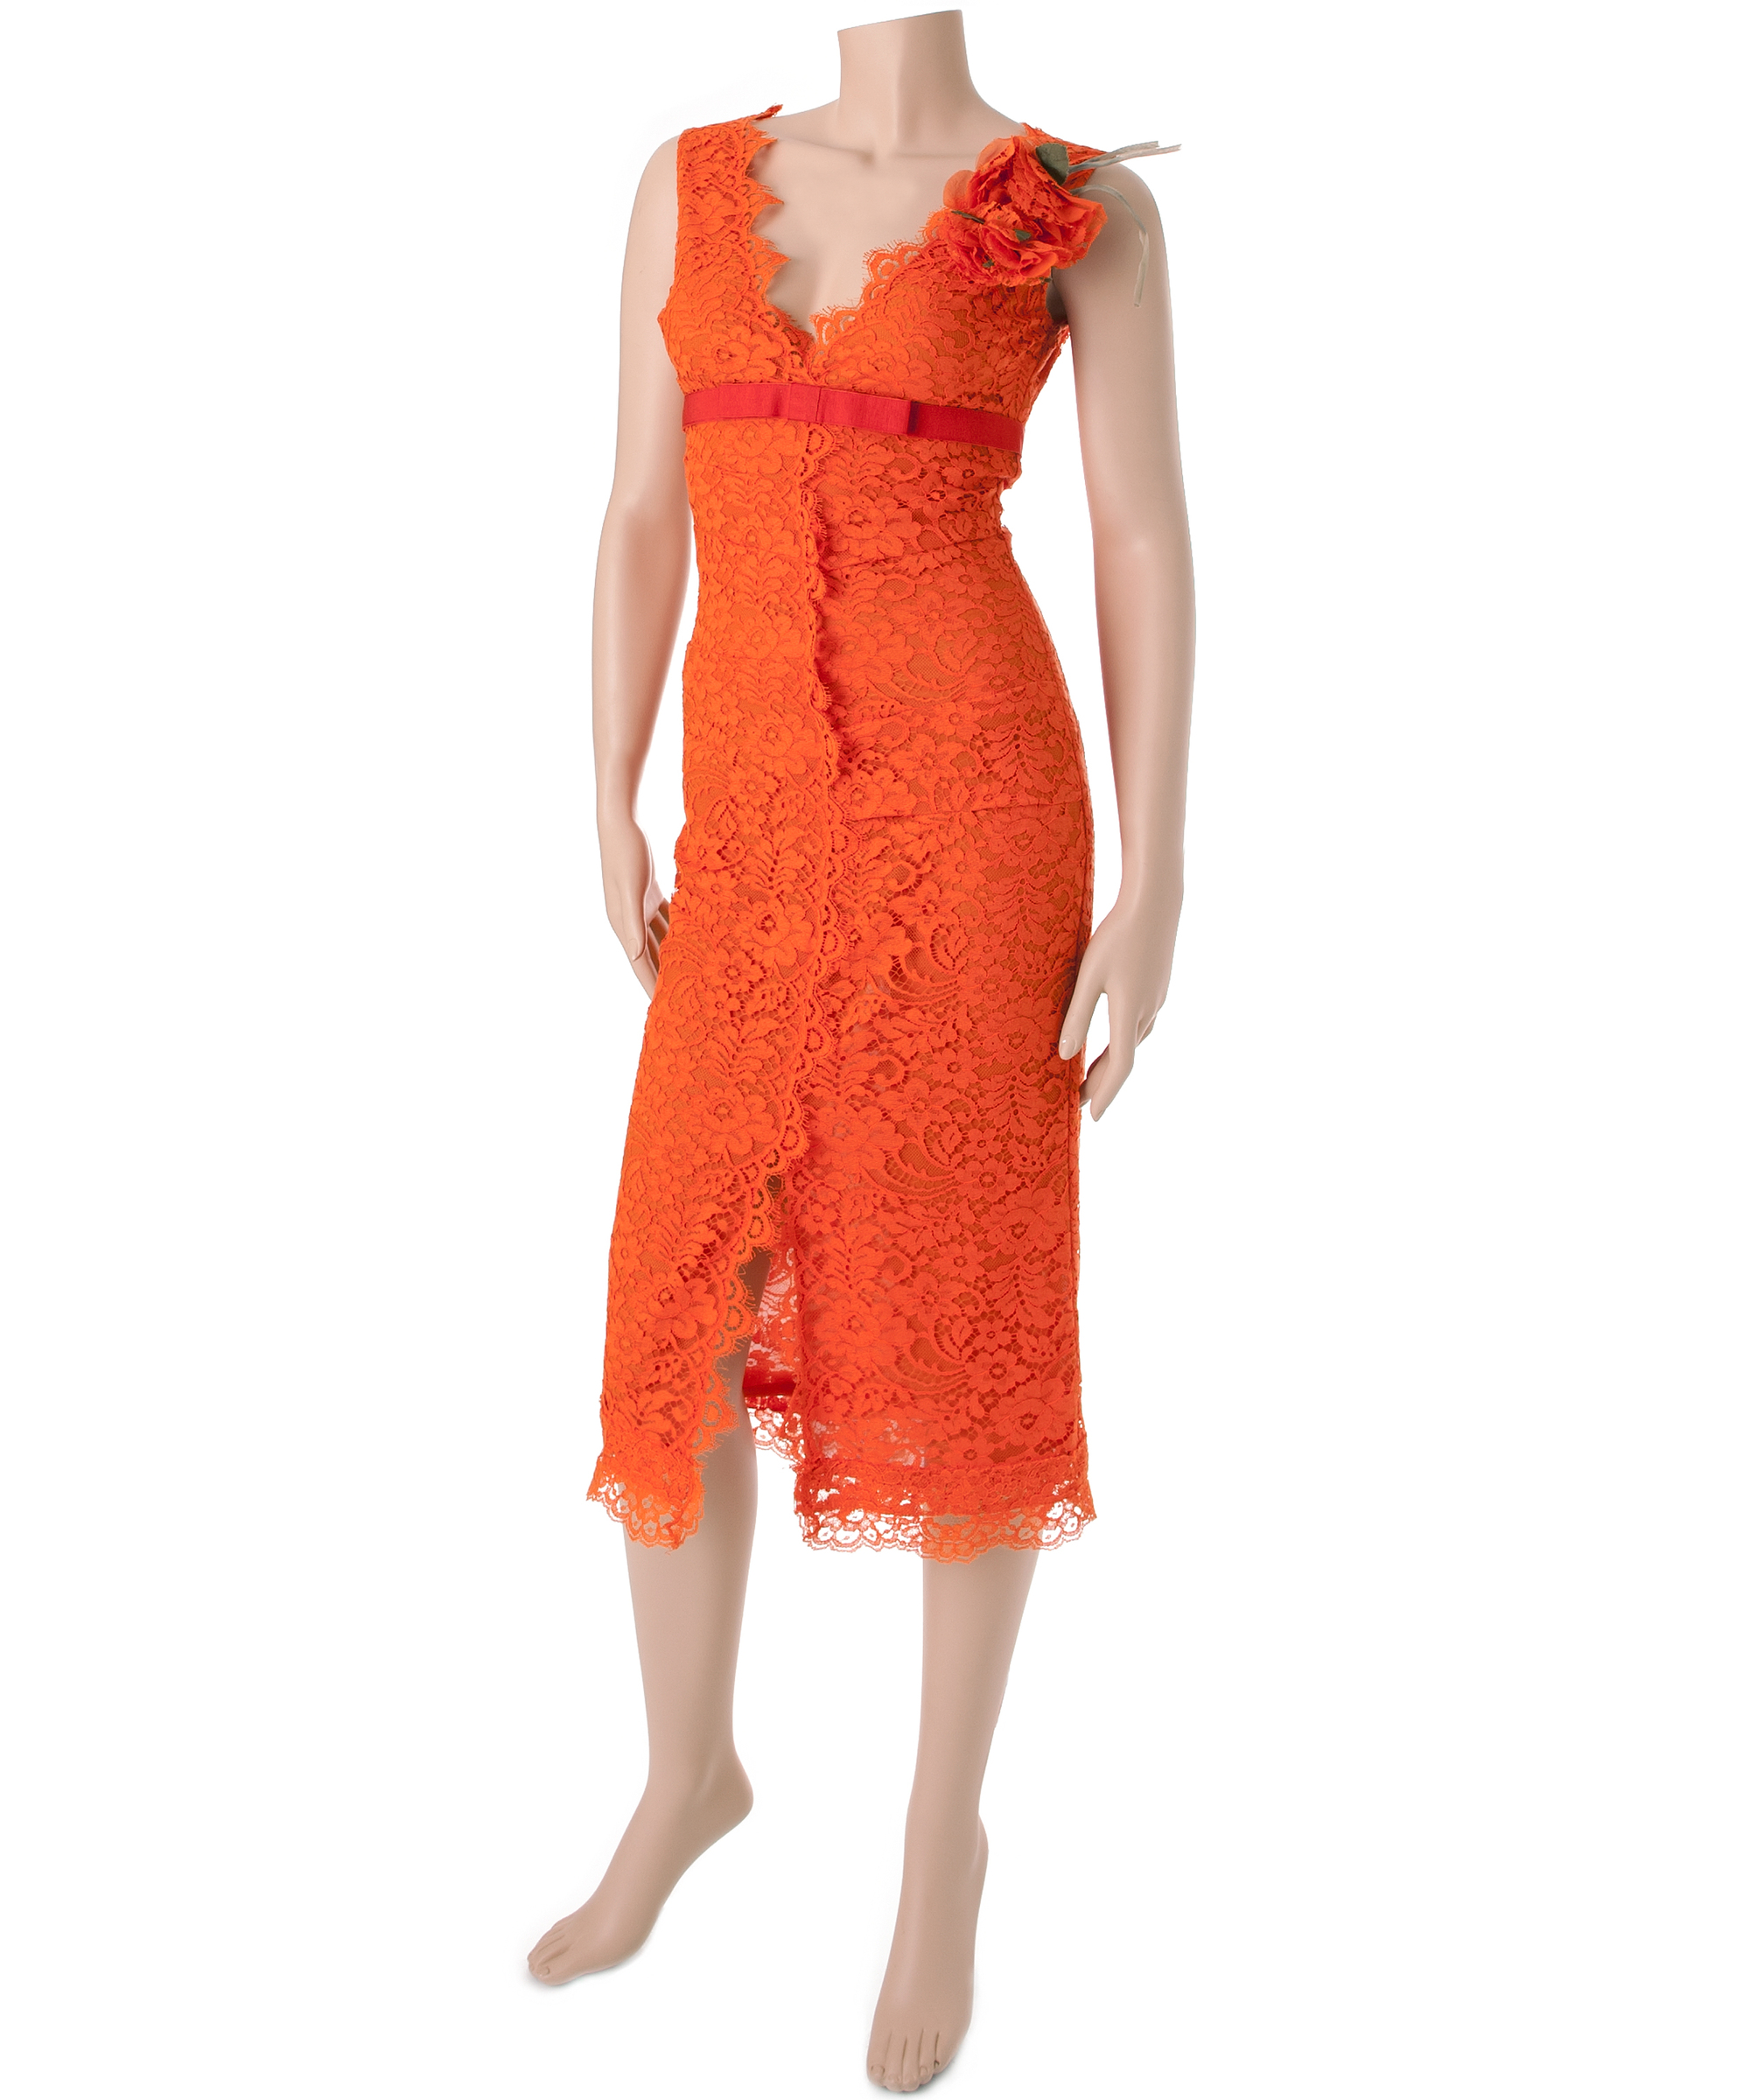 Dolce & Gabbana Orange Lace Dress